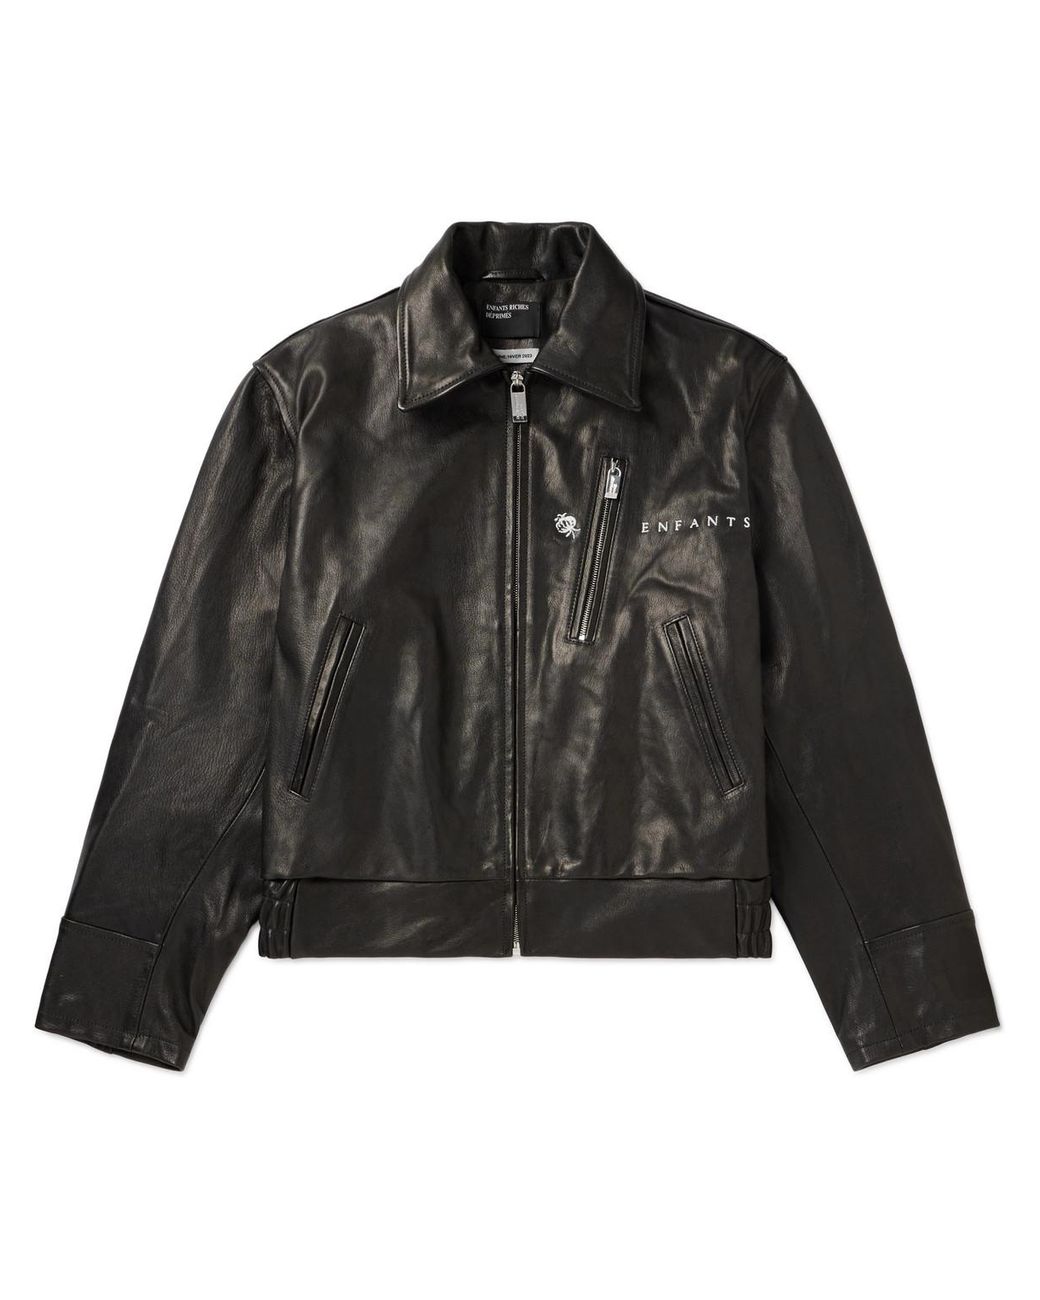 Enfants Riches Deprimes Embroidered Leather Jacket in Black for Men | Lyst